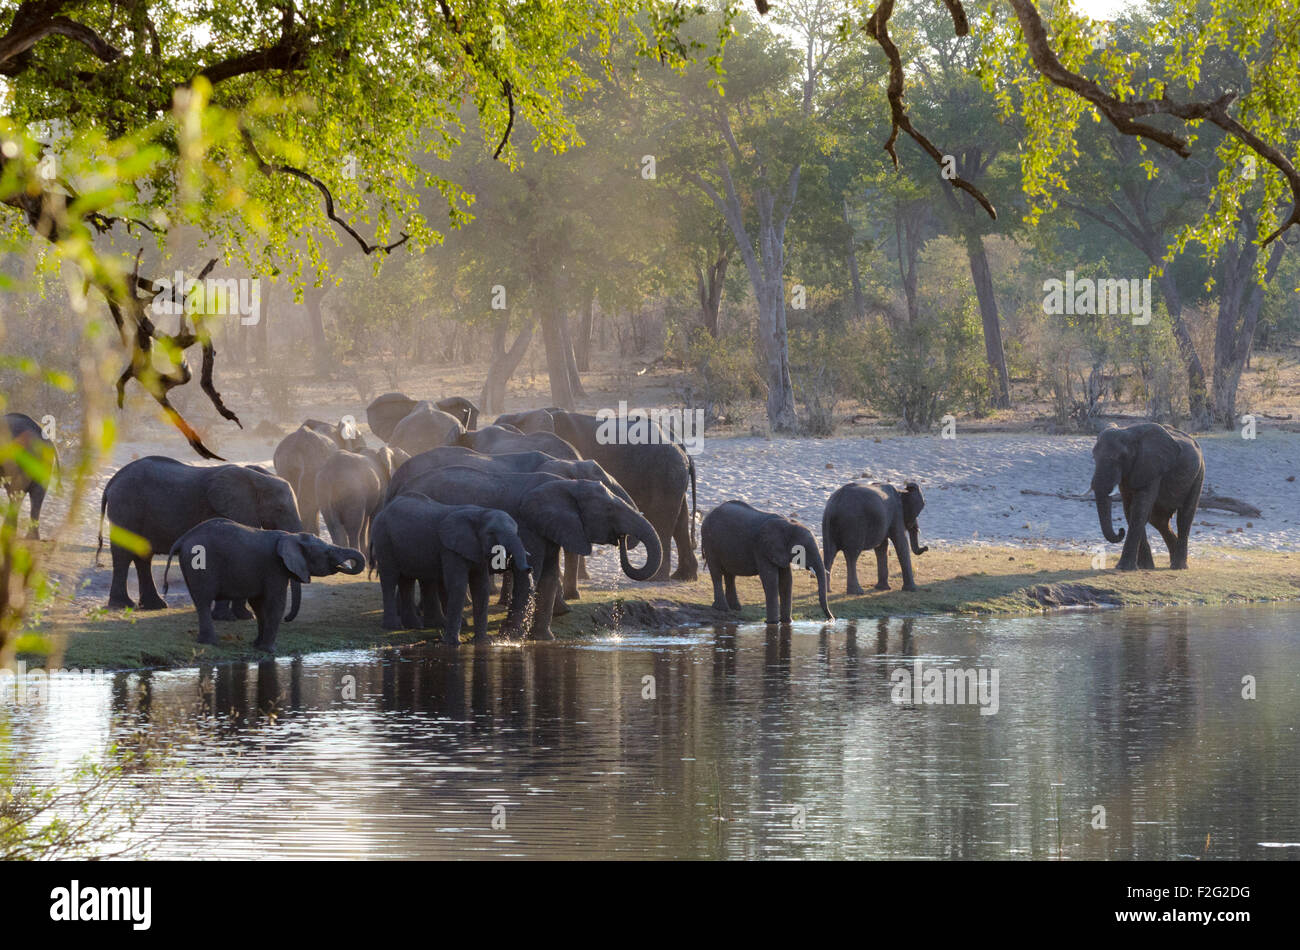 Les éléphants de l'alcool à l'horse-shoe bend de la rivière Kwando, Caprivi occidental, Namibie Banque D'Images